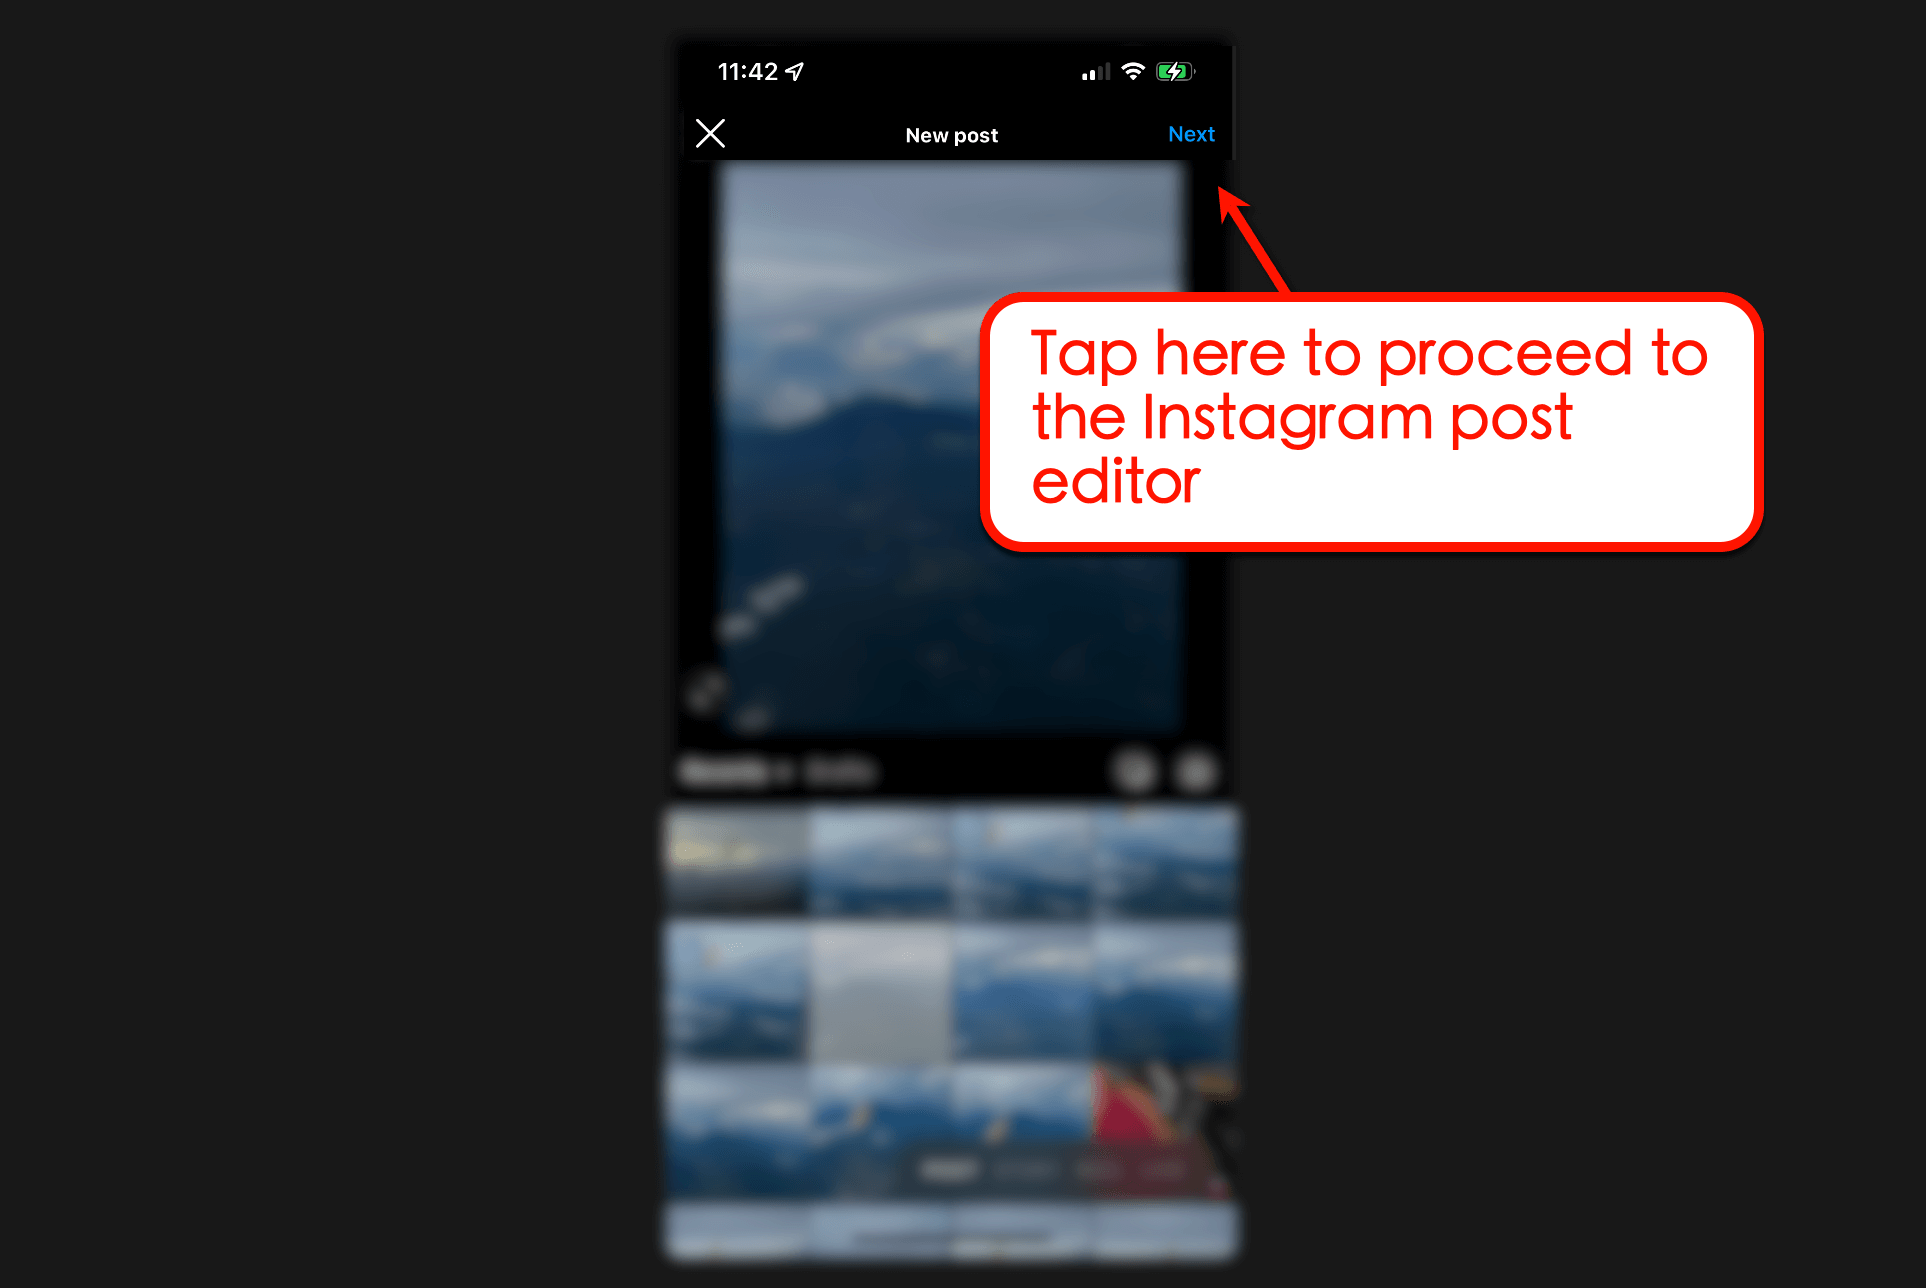 Edit your Instagram post